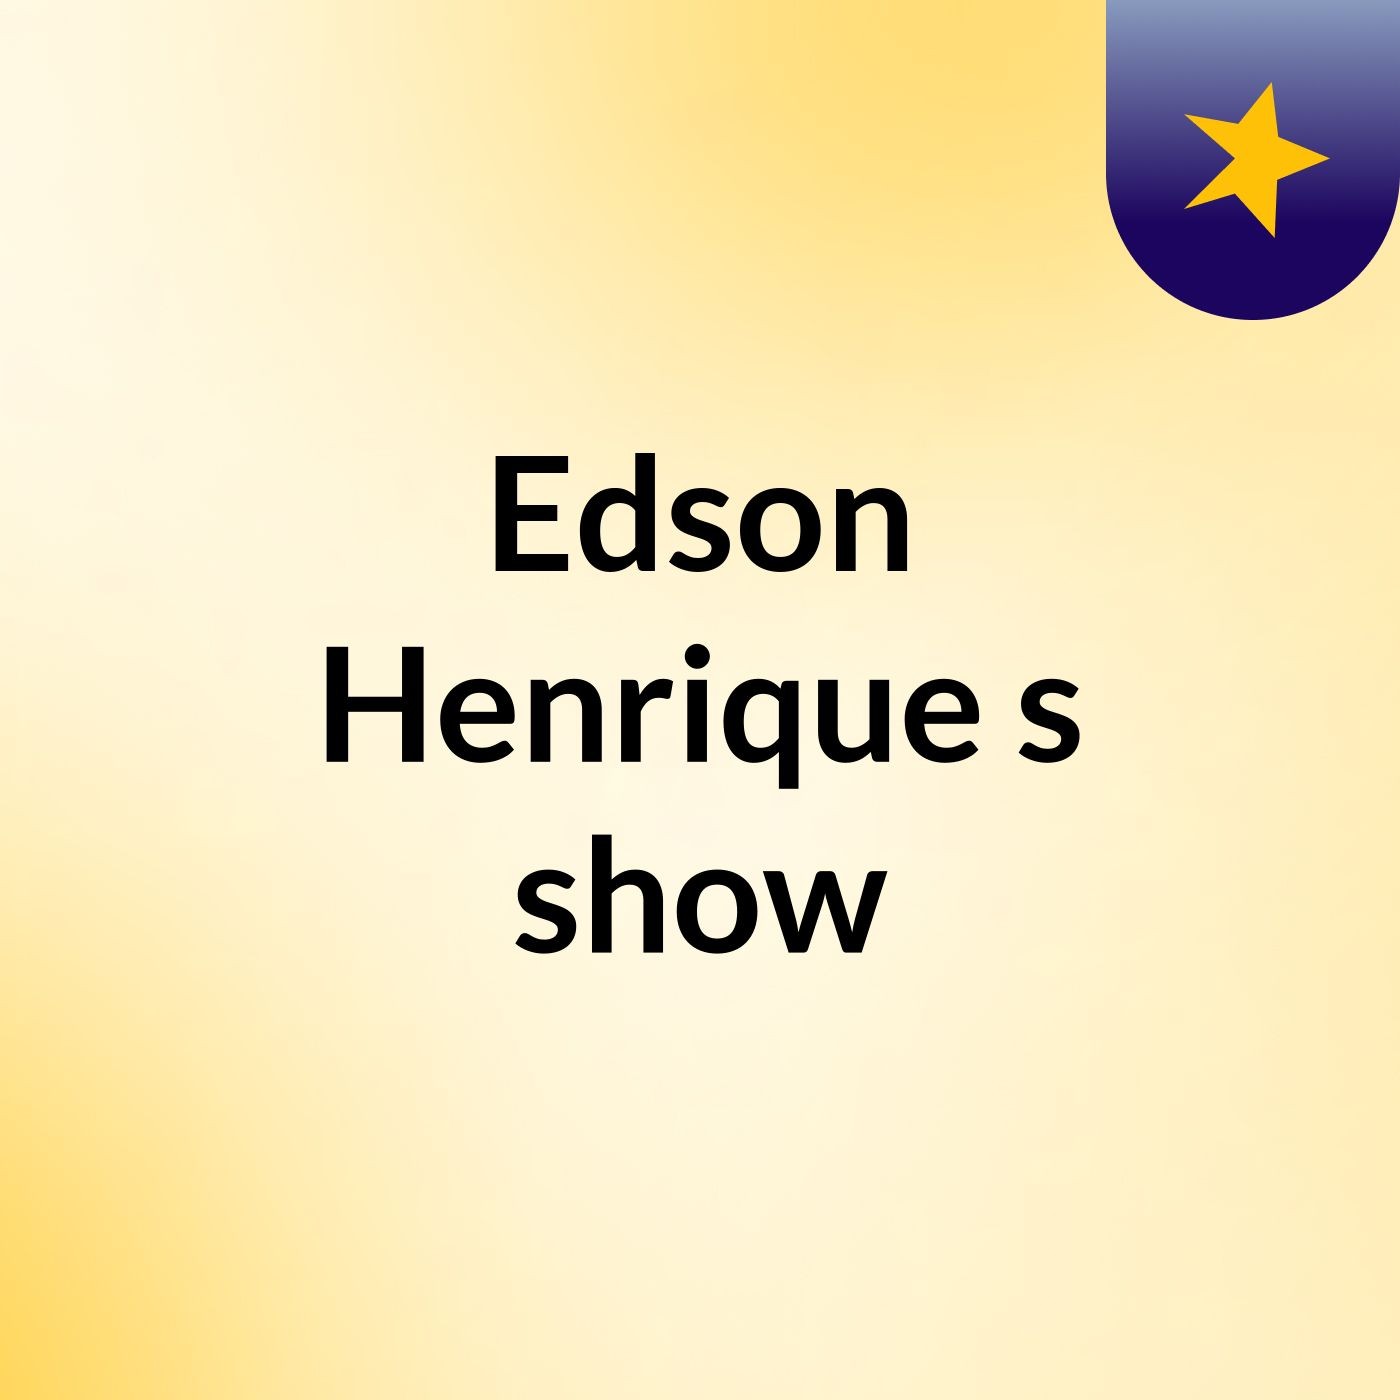 Edson Henrique's show